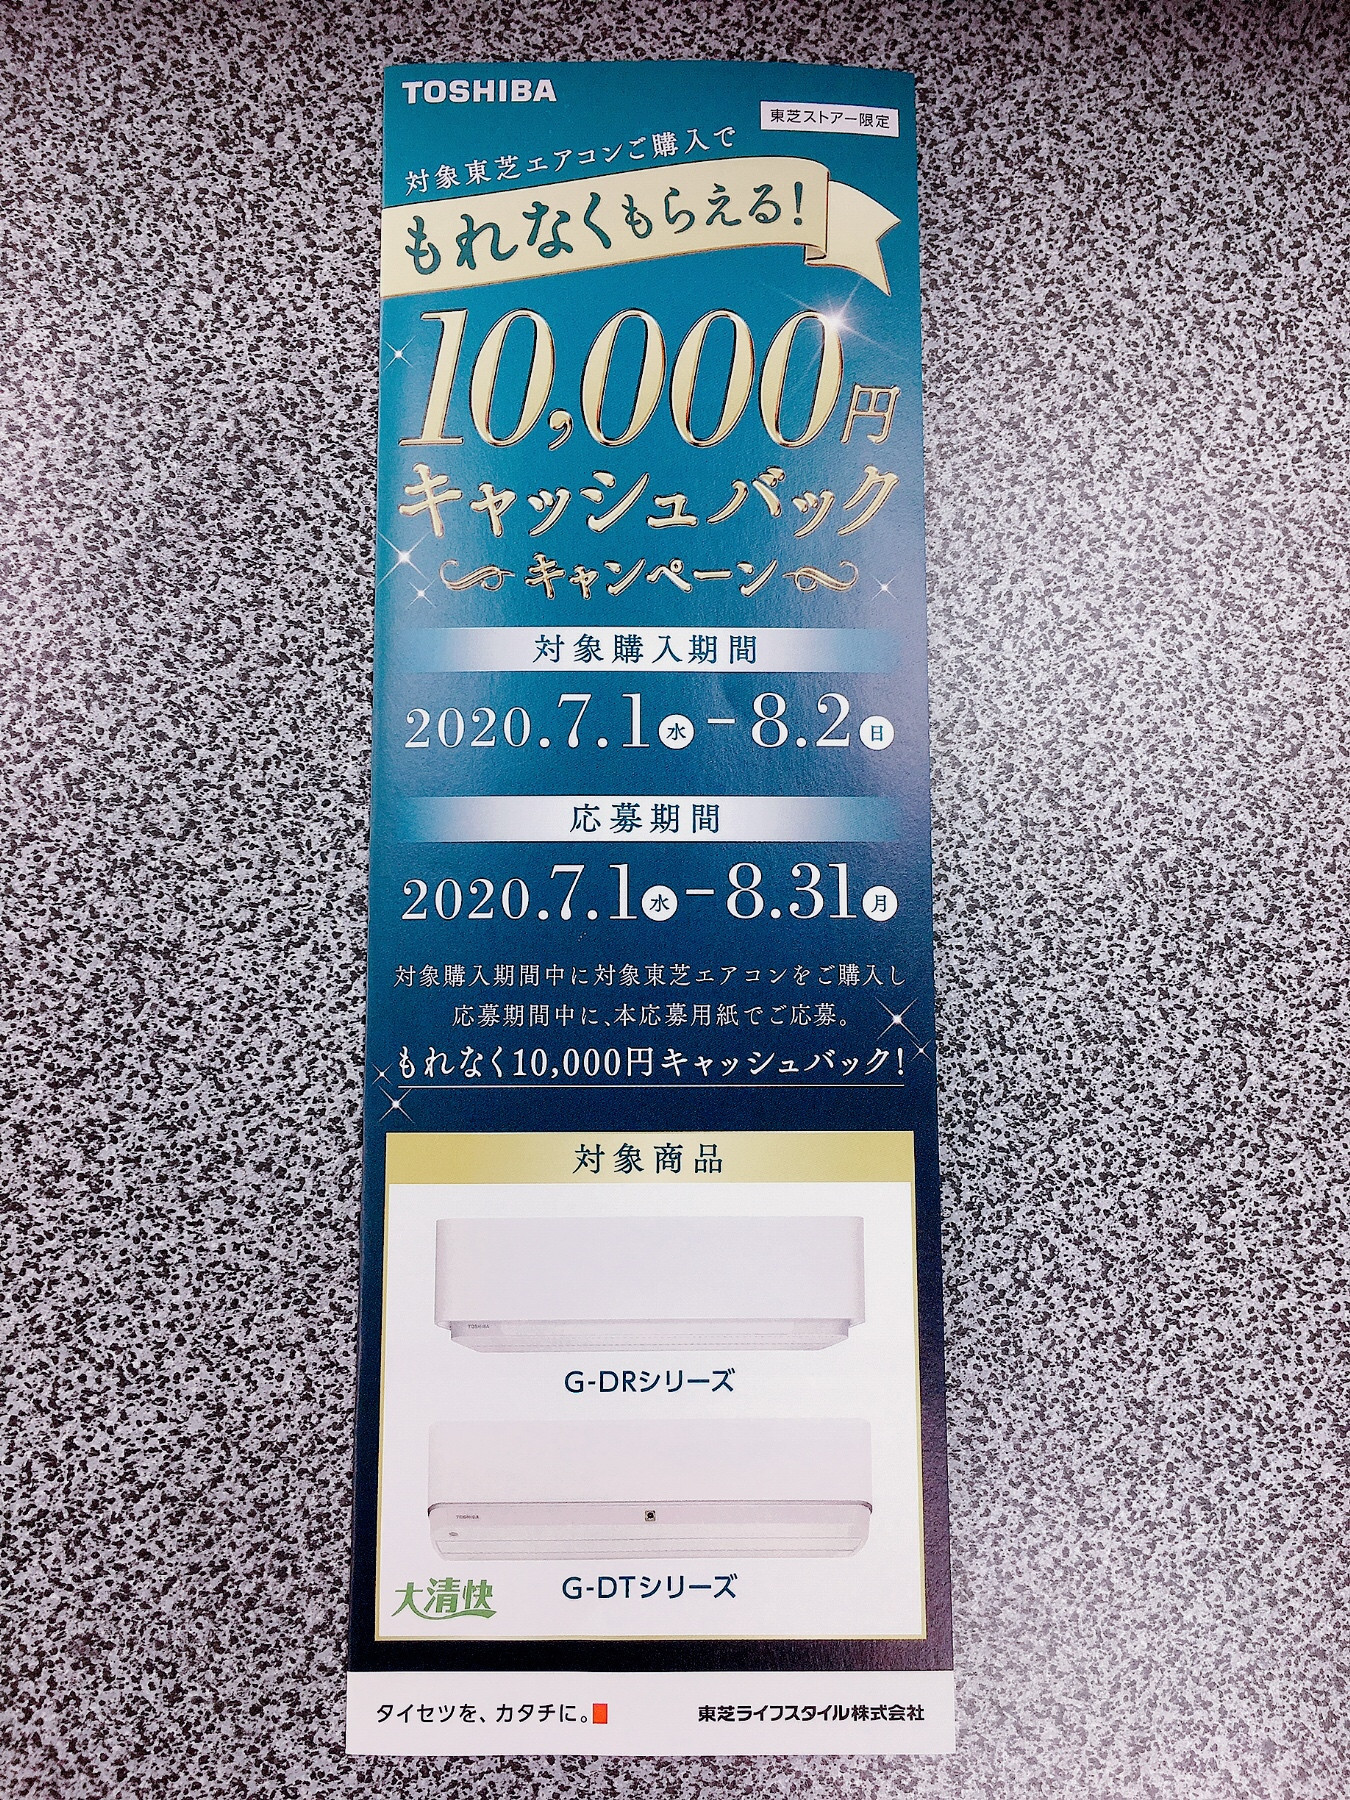  ✨10,000円キャッシュバックキャンペーン✨